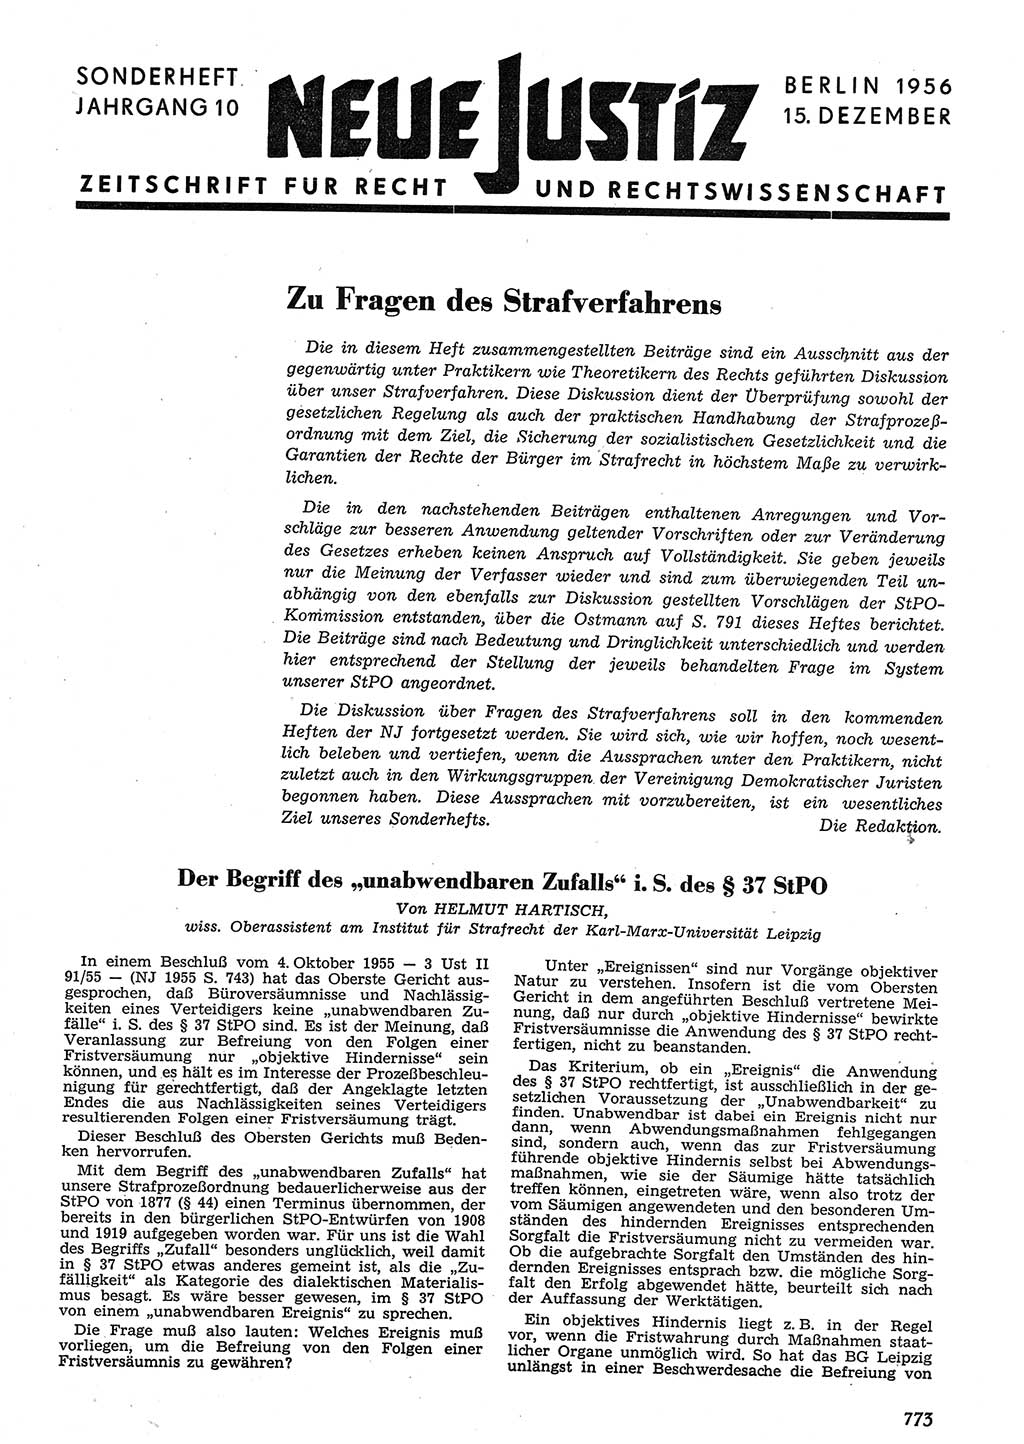 Neue Justiz (NJ), Zeitschrift für Recht und Rechtswissenschaft [Deutsche Demokratische Republik (DDR)], 10. Jahrgang 1956, Seite 773 (NJ DDR 1956, S. 773)